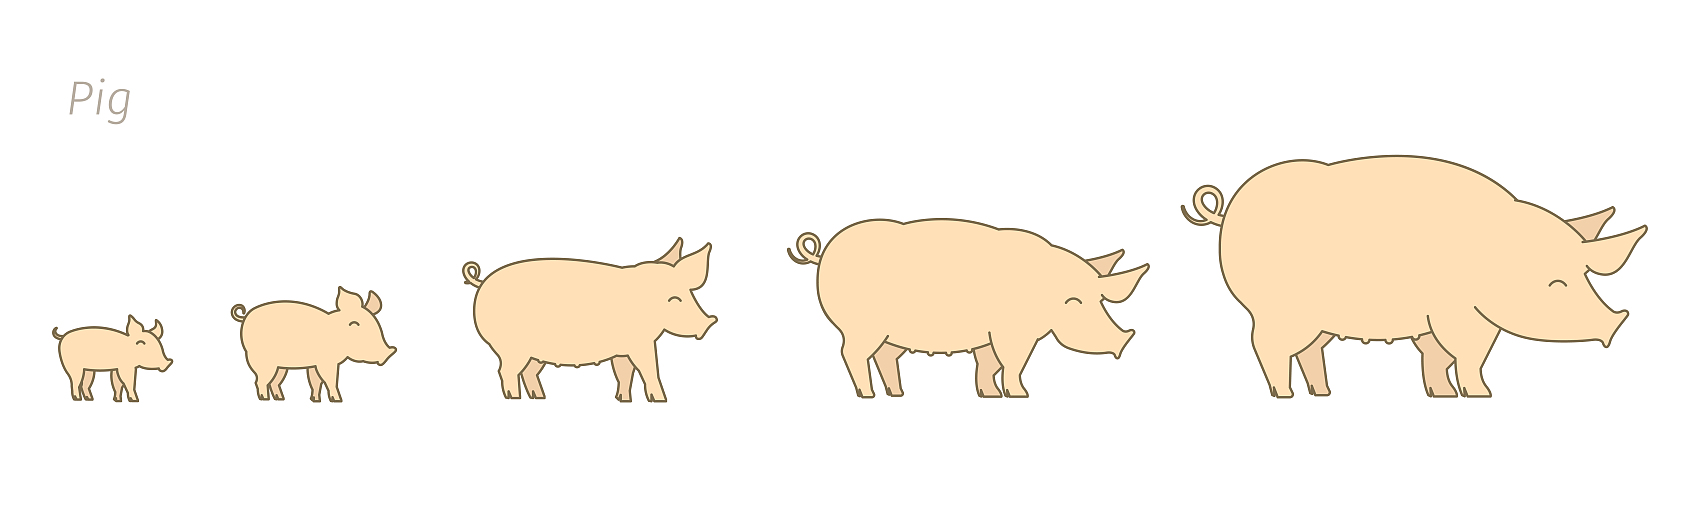 Porcs à différents stades de croissance